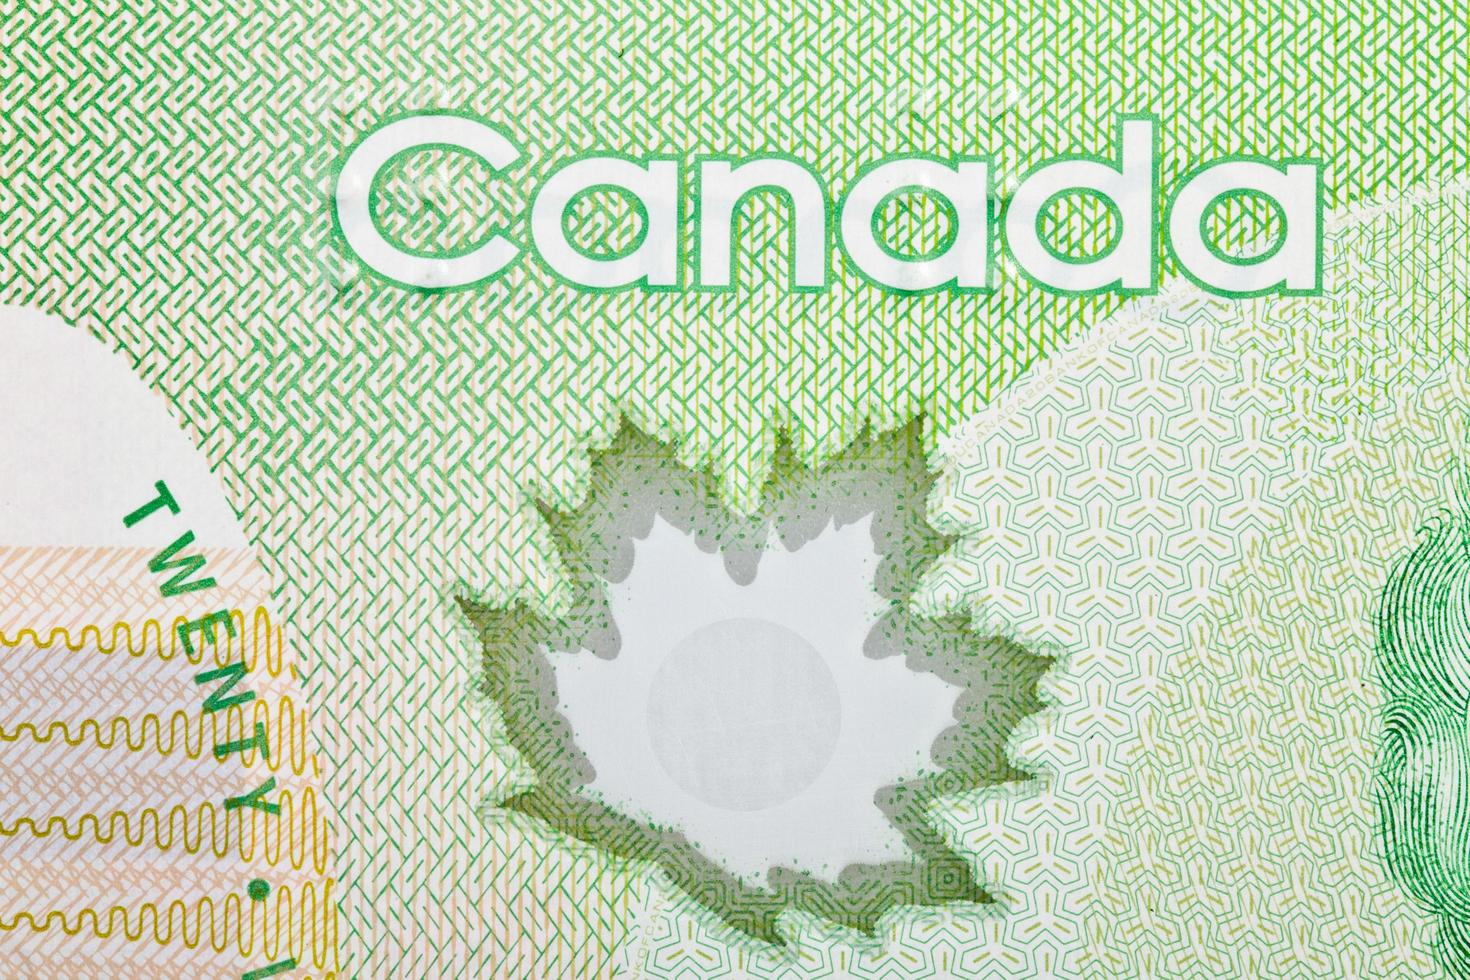 Ottawa, Kanada, 13. April 2013, extreme Nahaufnahme von neuen Polymer-Zwanzig-Dollar-Scheinen foto